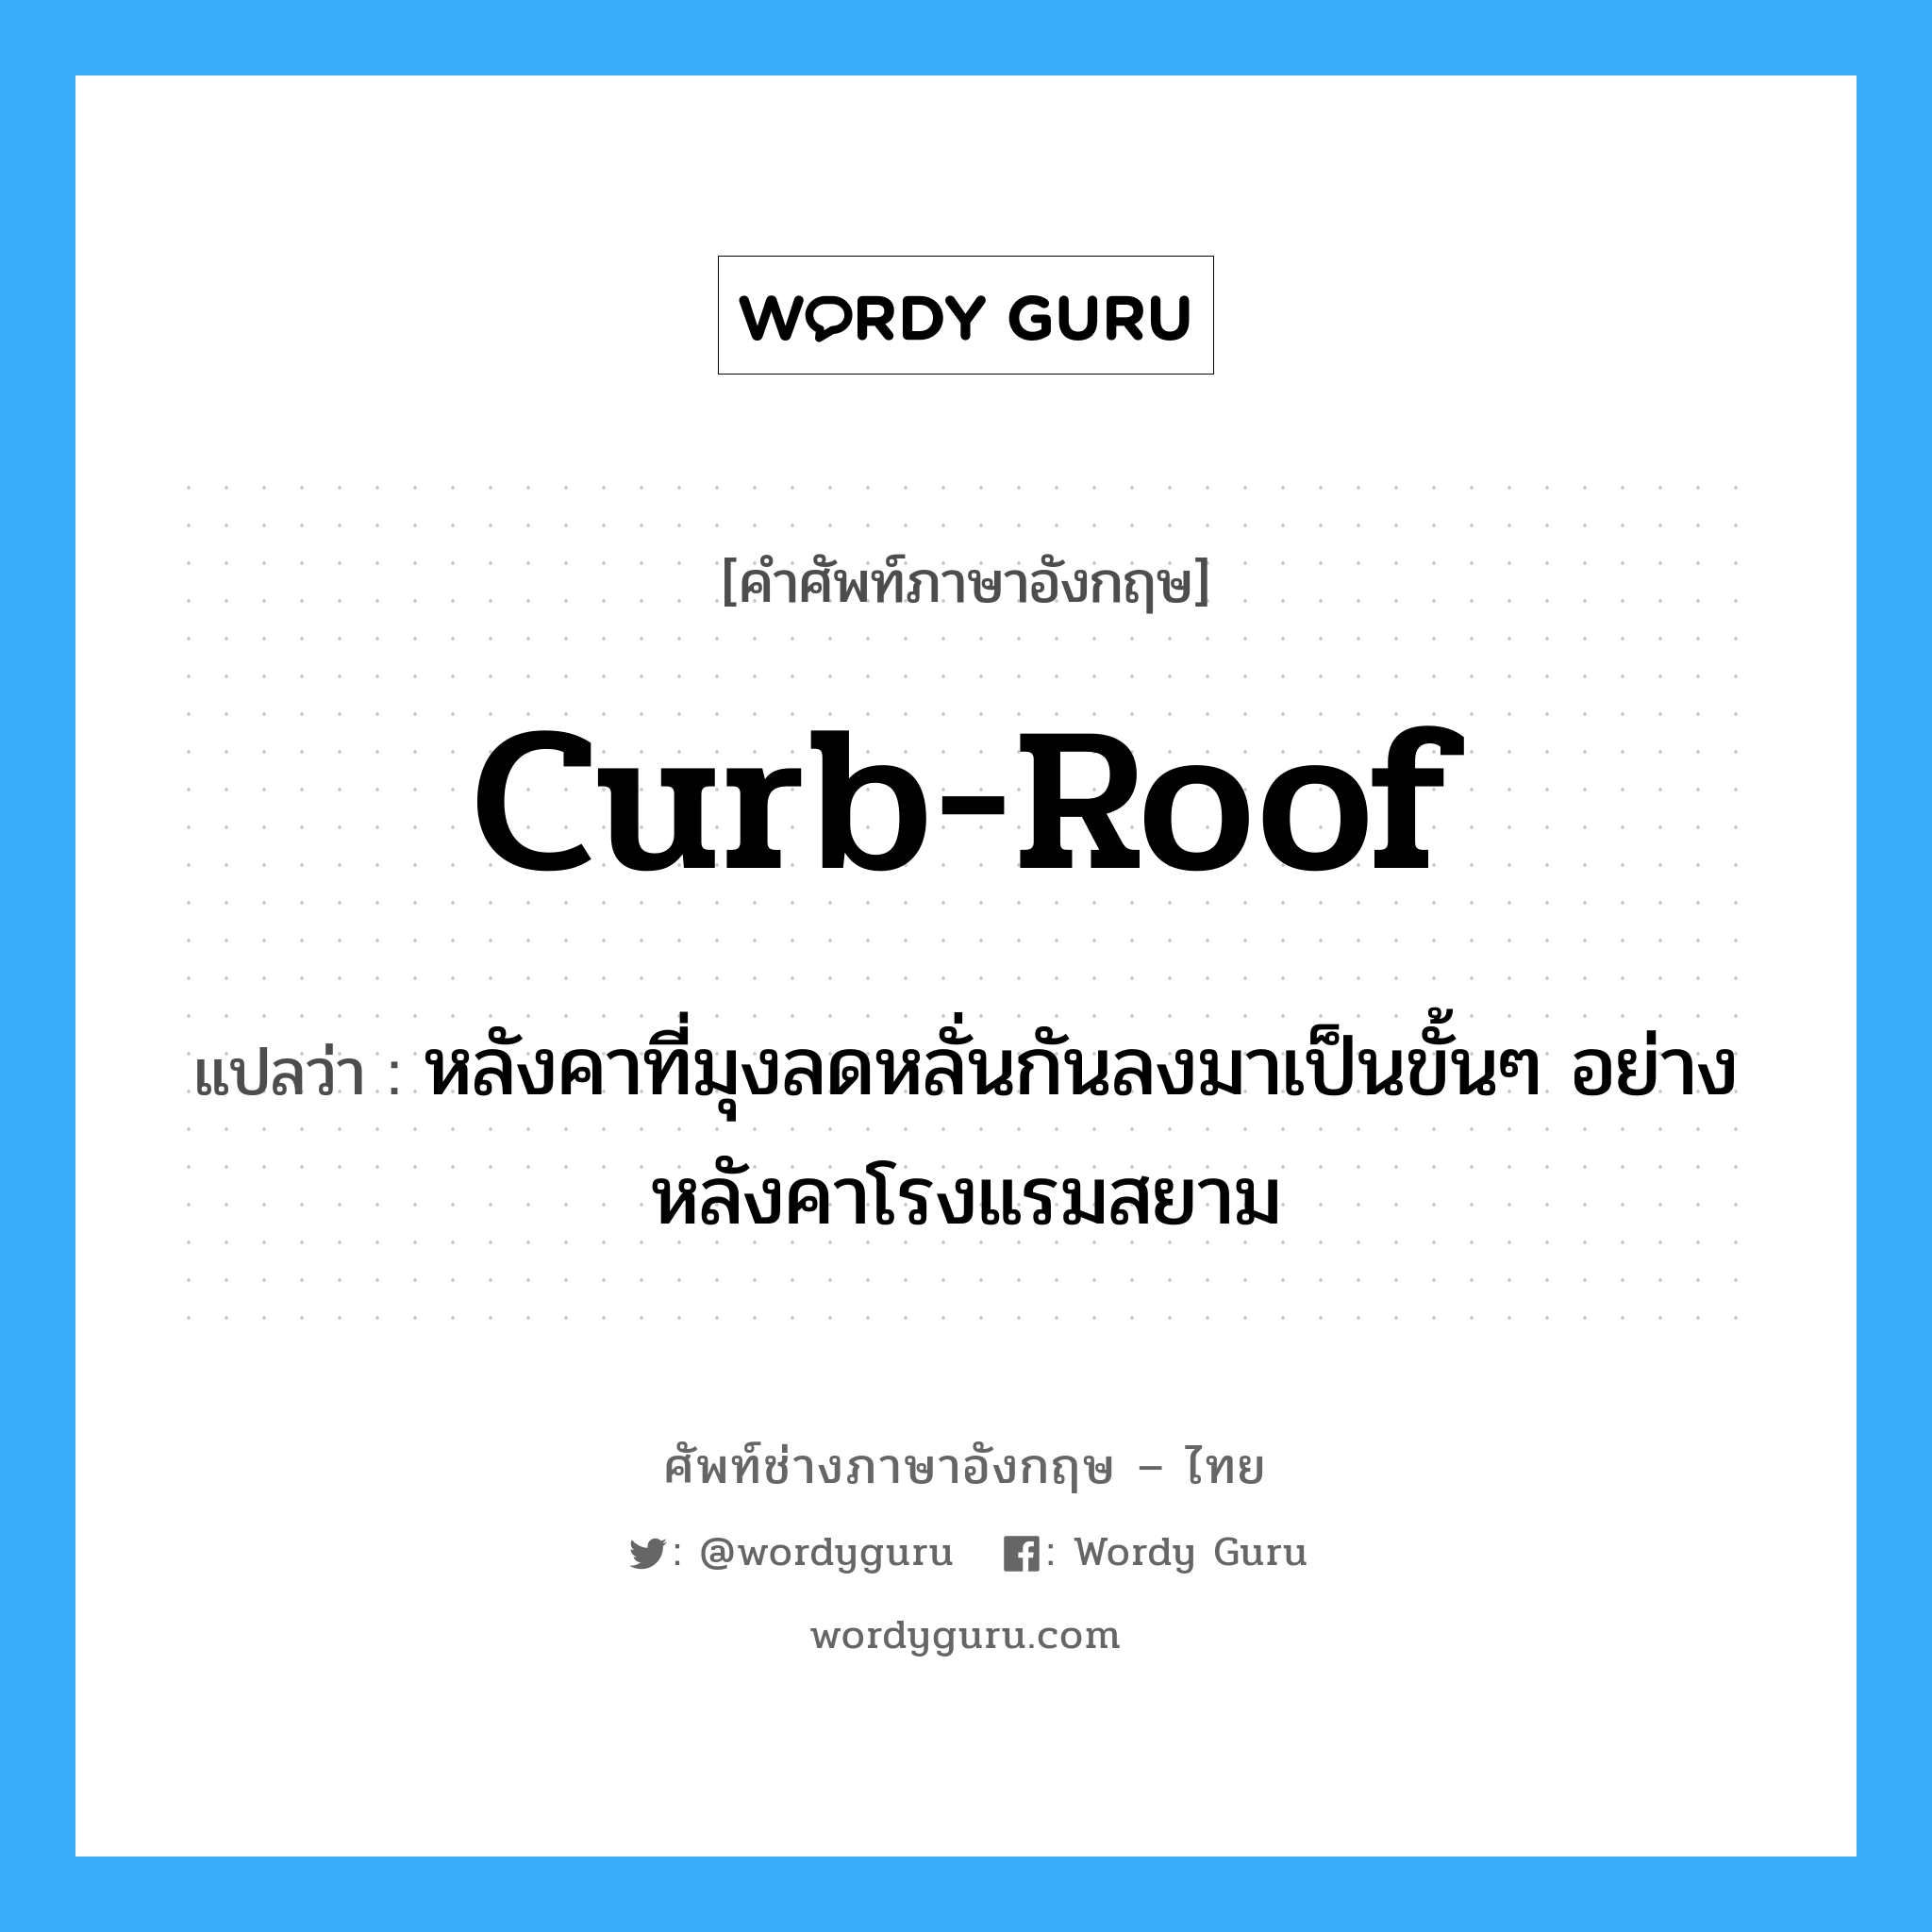 curb-roof แปลว่า?, คำศัพท์ช่างภาษาอังกฤษ - ไทย curb-roof คำศัพท์ภาษาอังกฤษ curb-roof แปลว่า หลังคาที่มุงลดหลั่นกันลงมาเป็นขั้นๆ อย่างหลังคาโรงแรมสยาม